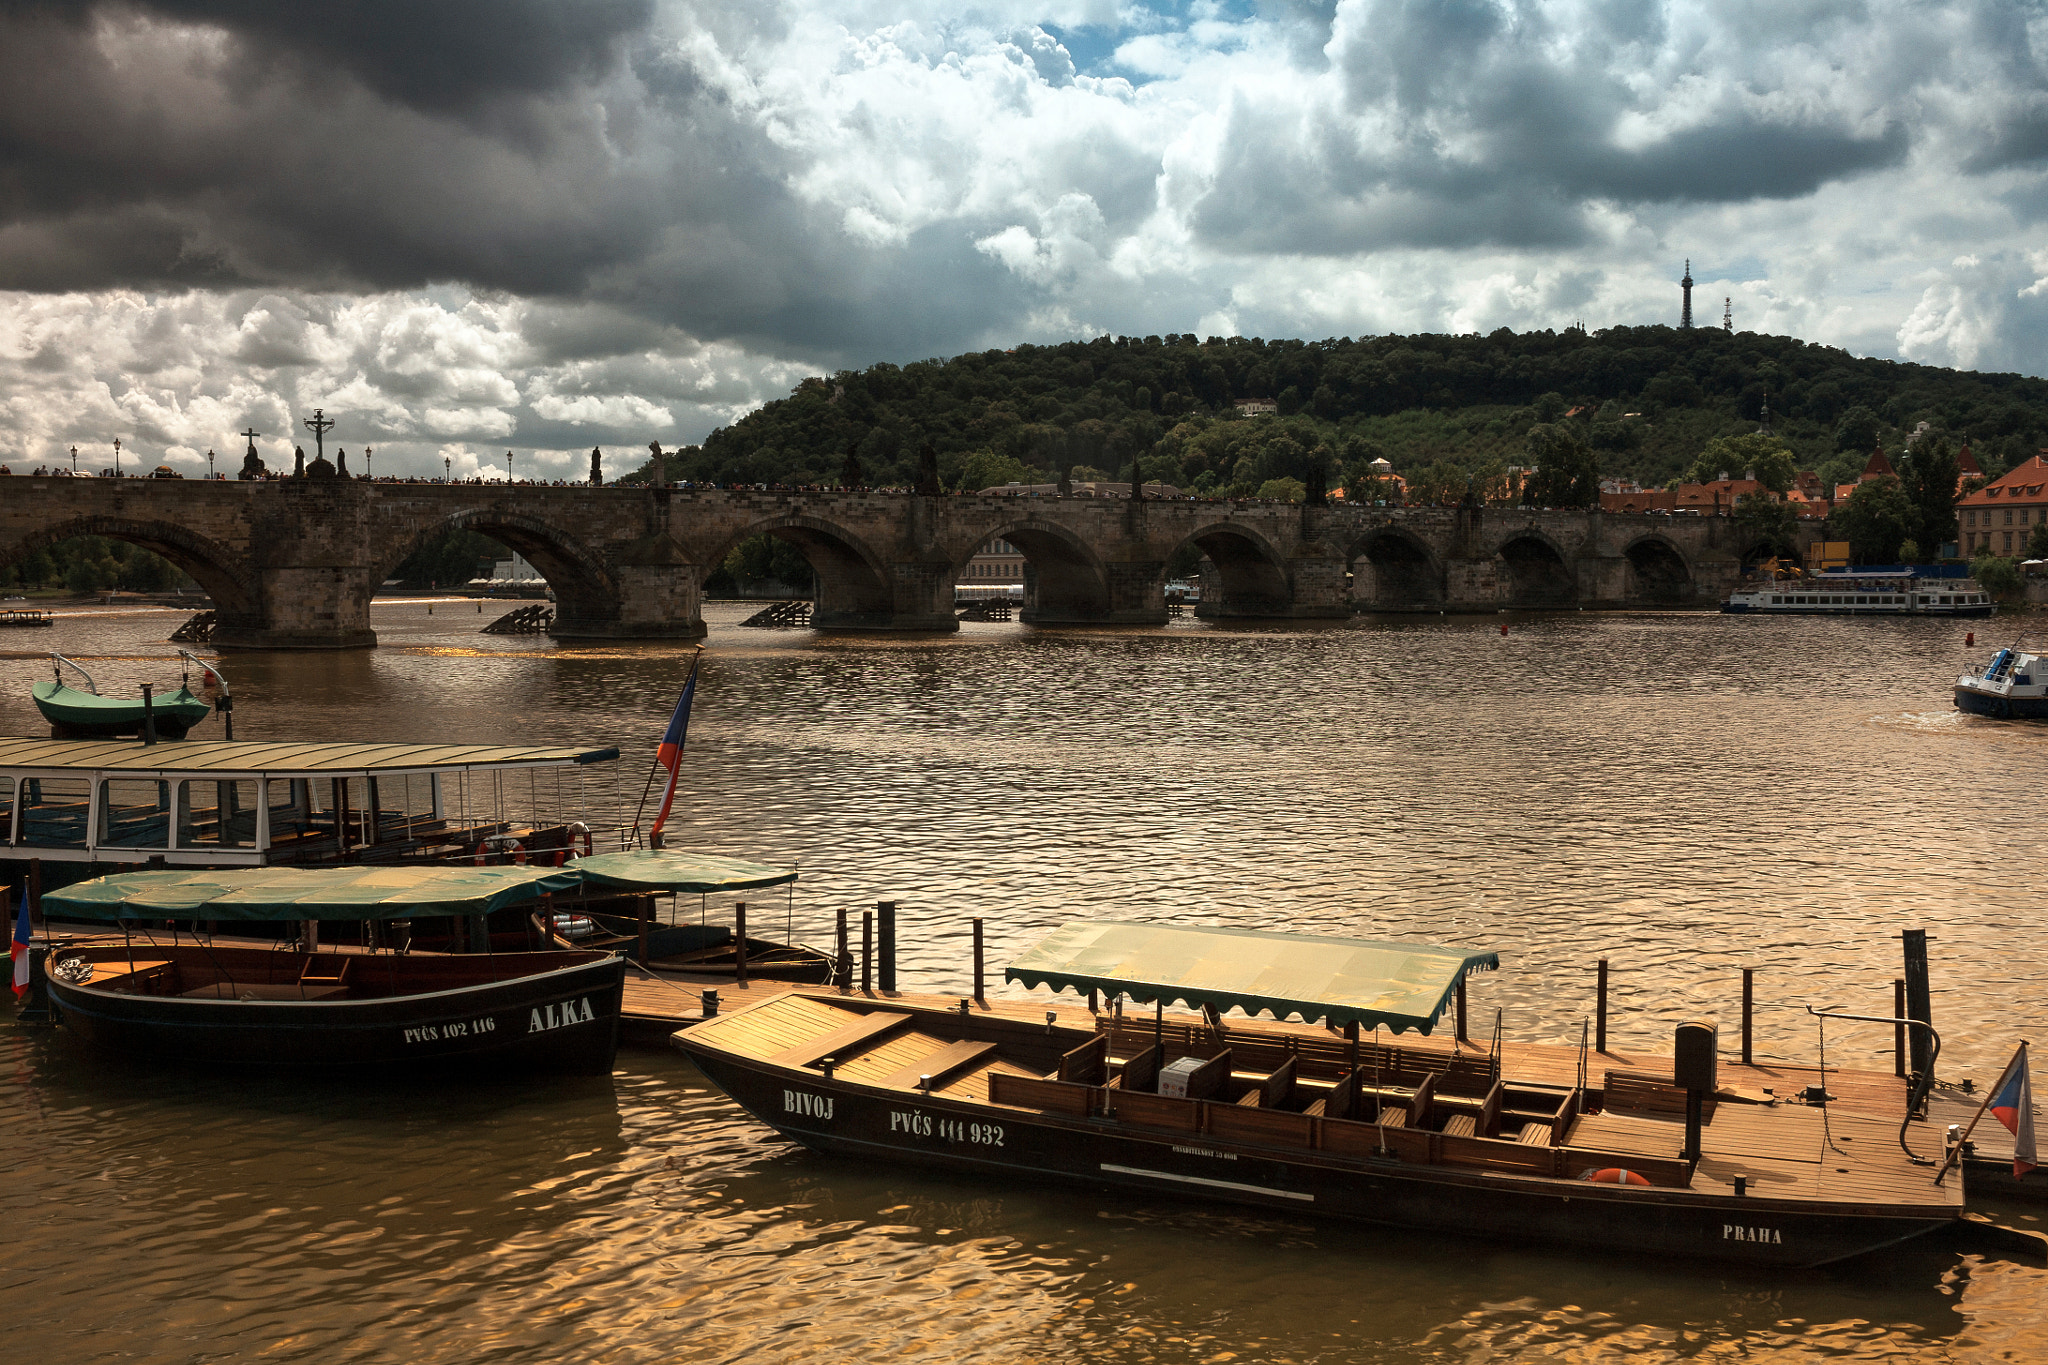 Canon EOS 5D + ZEISS Distagon T* 35mm F2 sample photo. Prague bridges photography